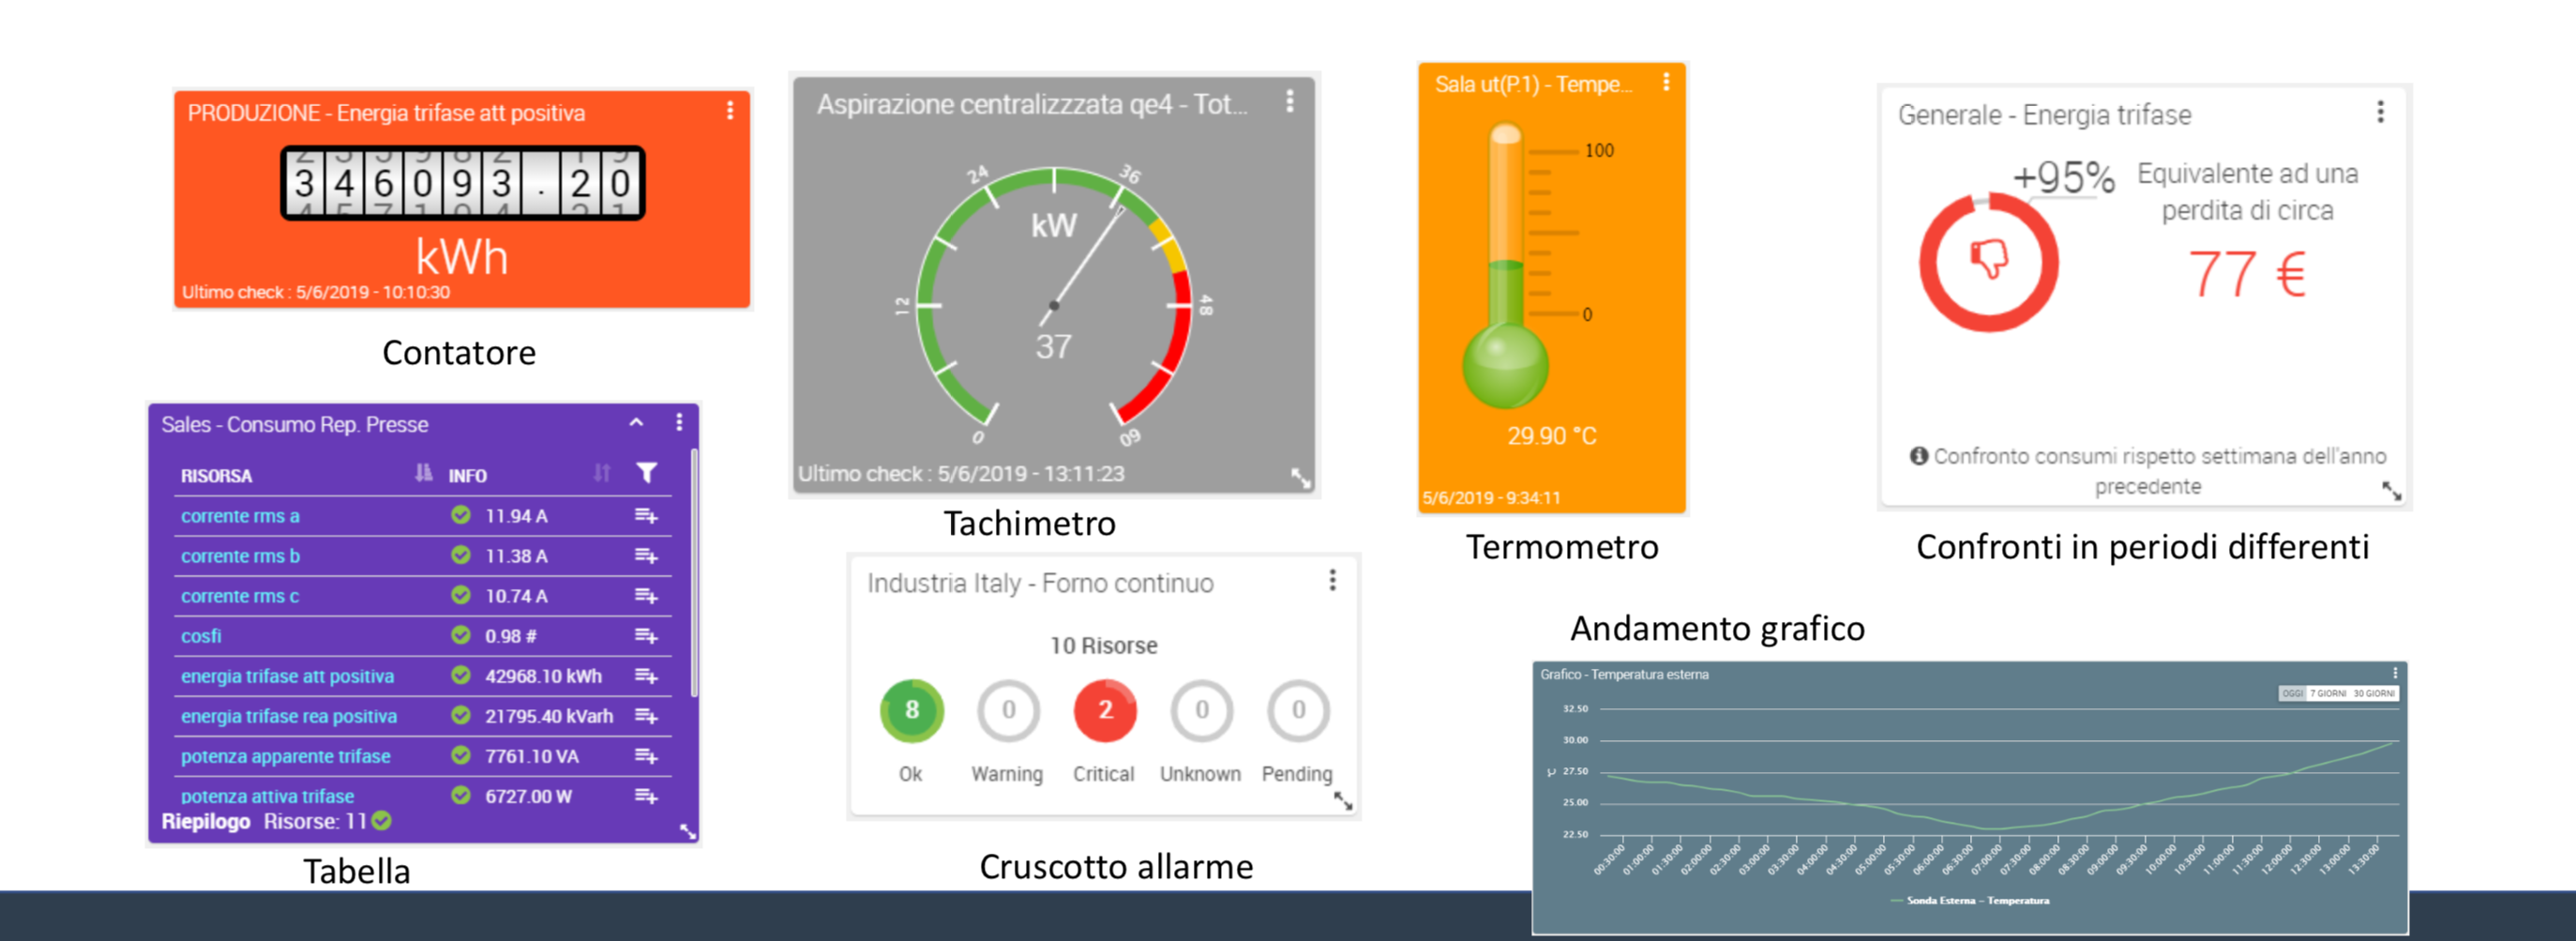 dashboard piattaforma monitoraggio energia